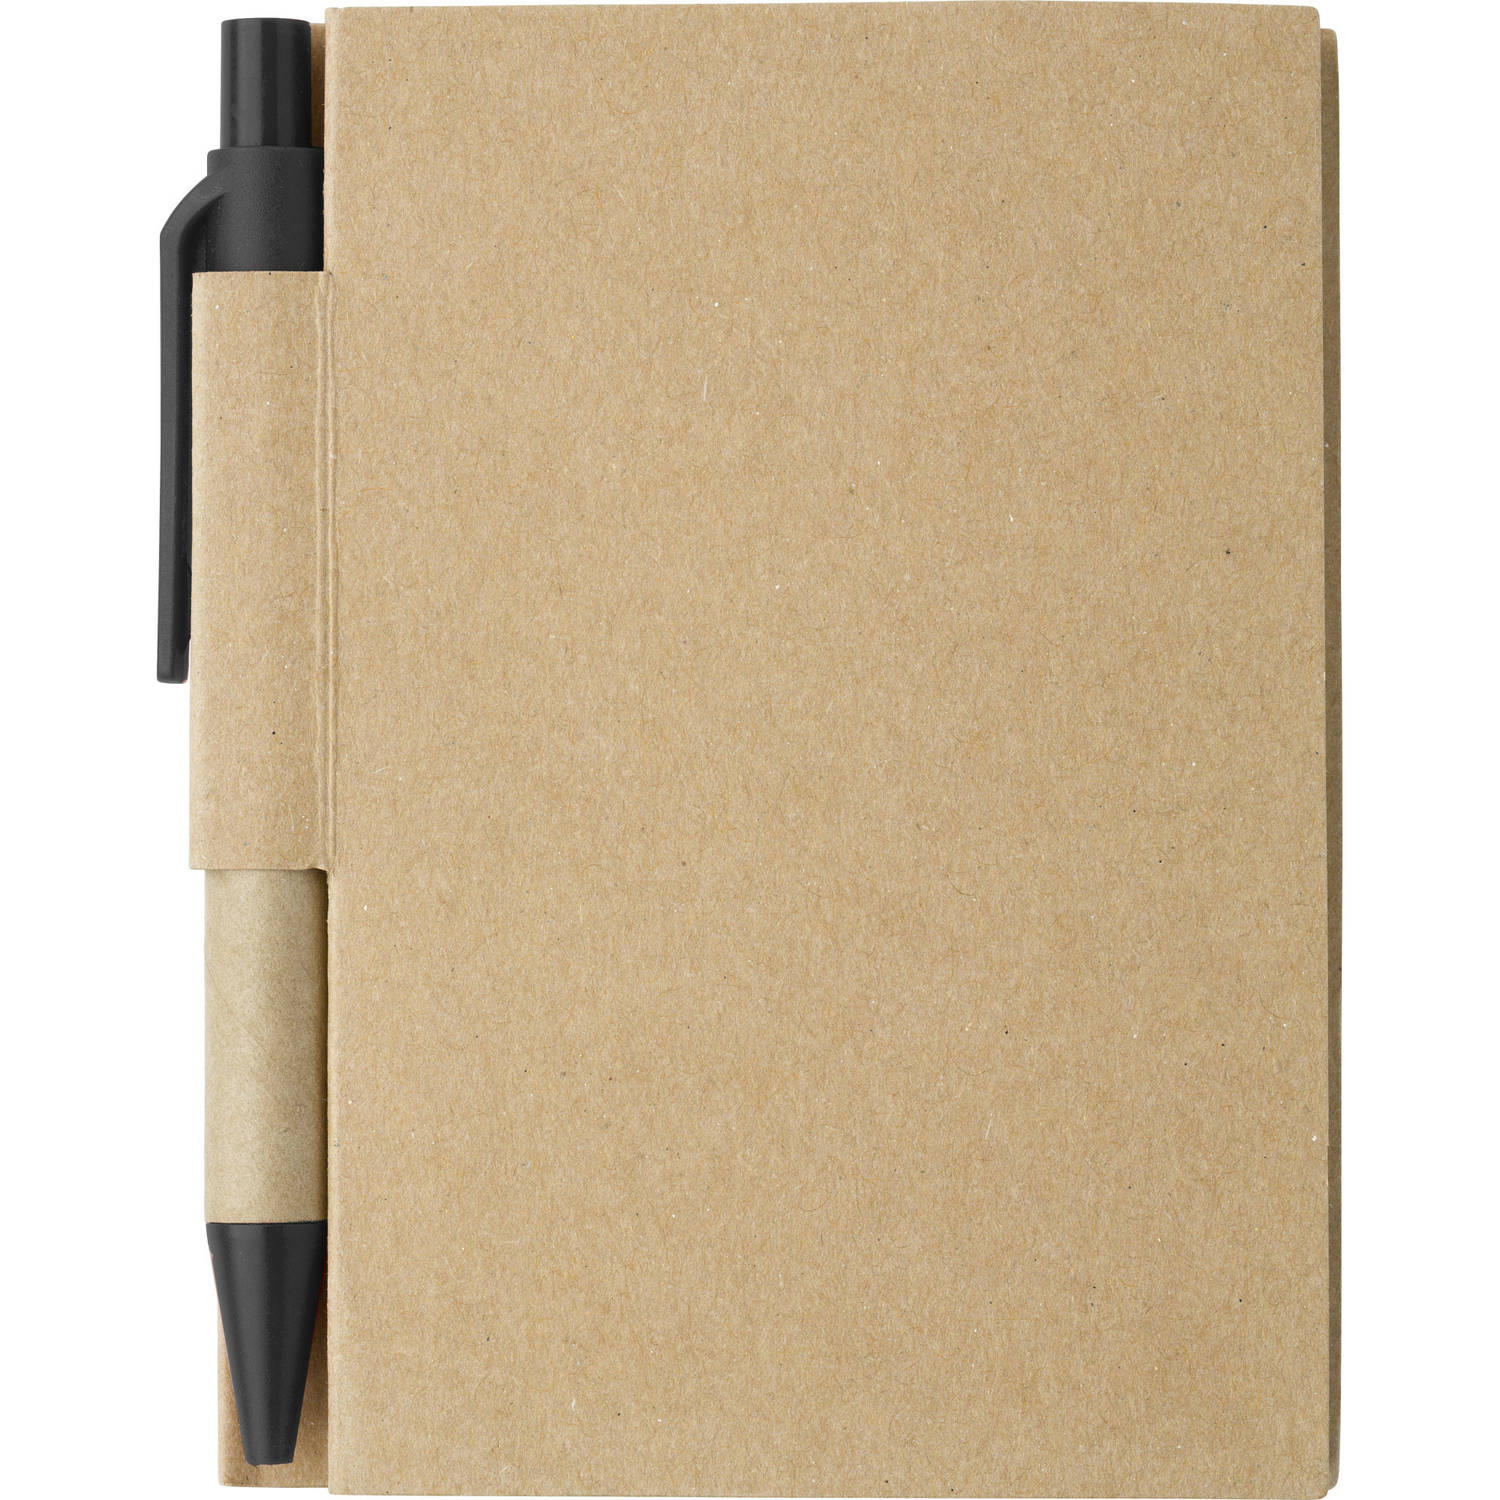 Notitie-opschrijf boekje met balpen harde kaft beige-zwart 11x8cm 80blz gelinieerd Notitieboek